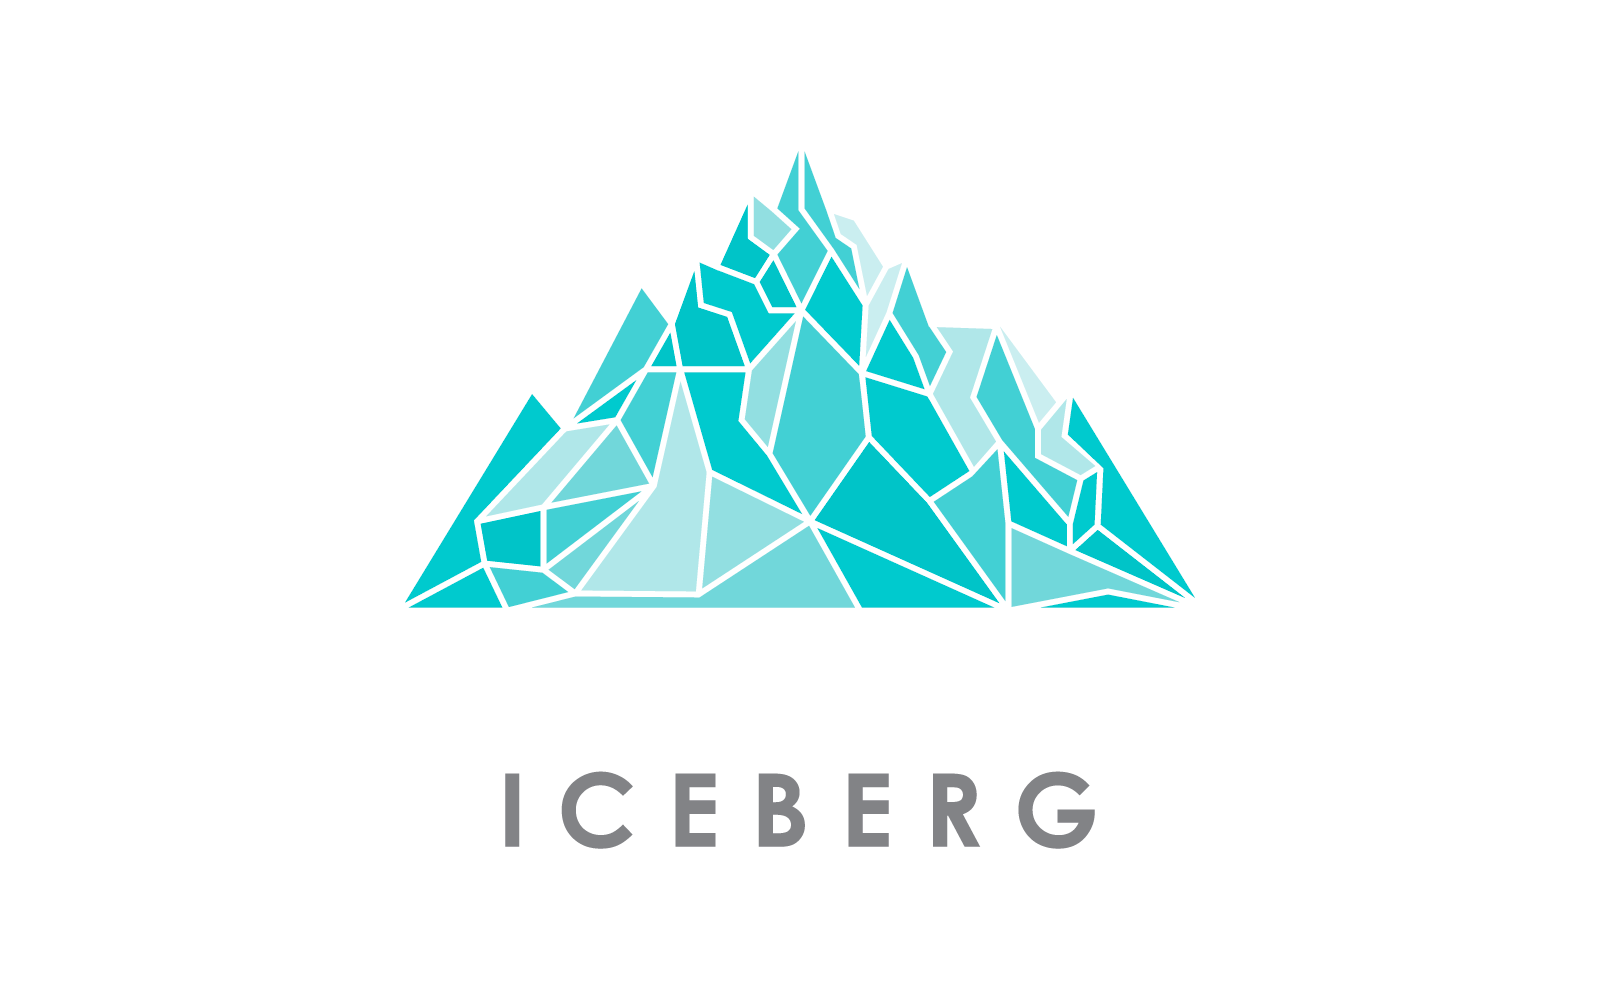 Iceberg ilustración logo vector plantilla de diseño plano